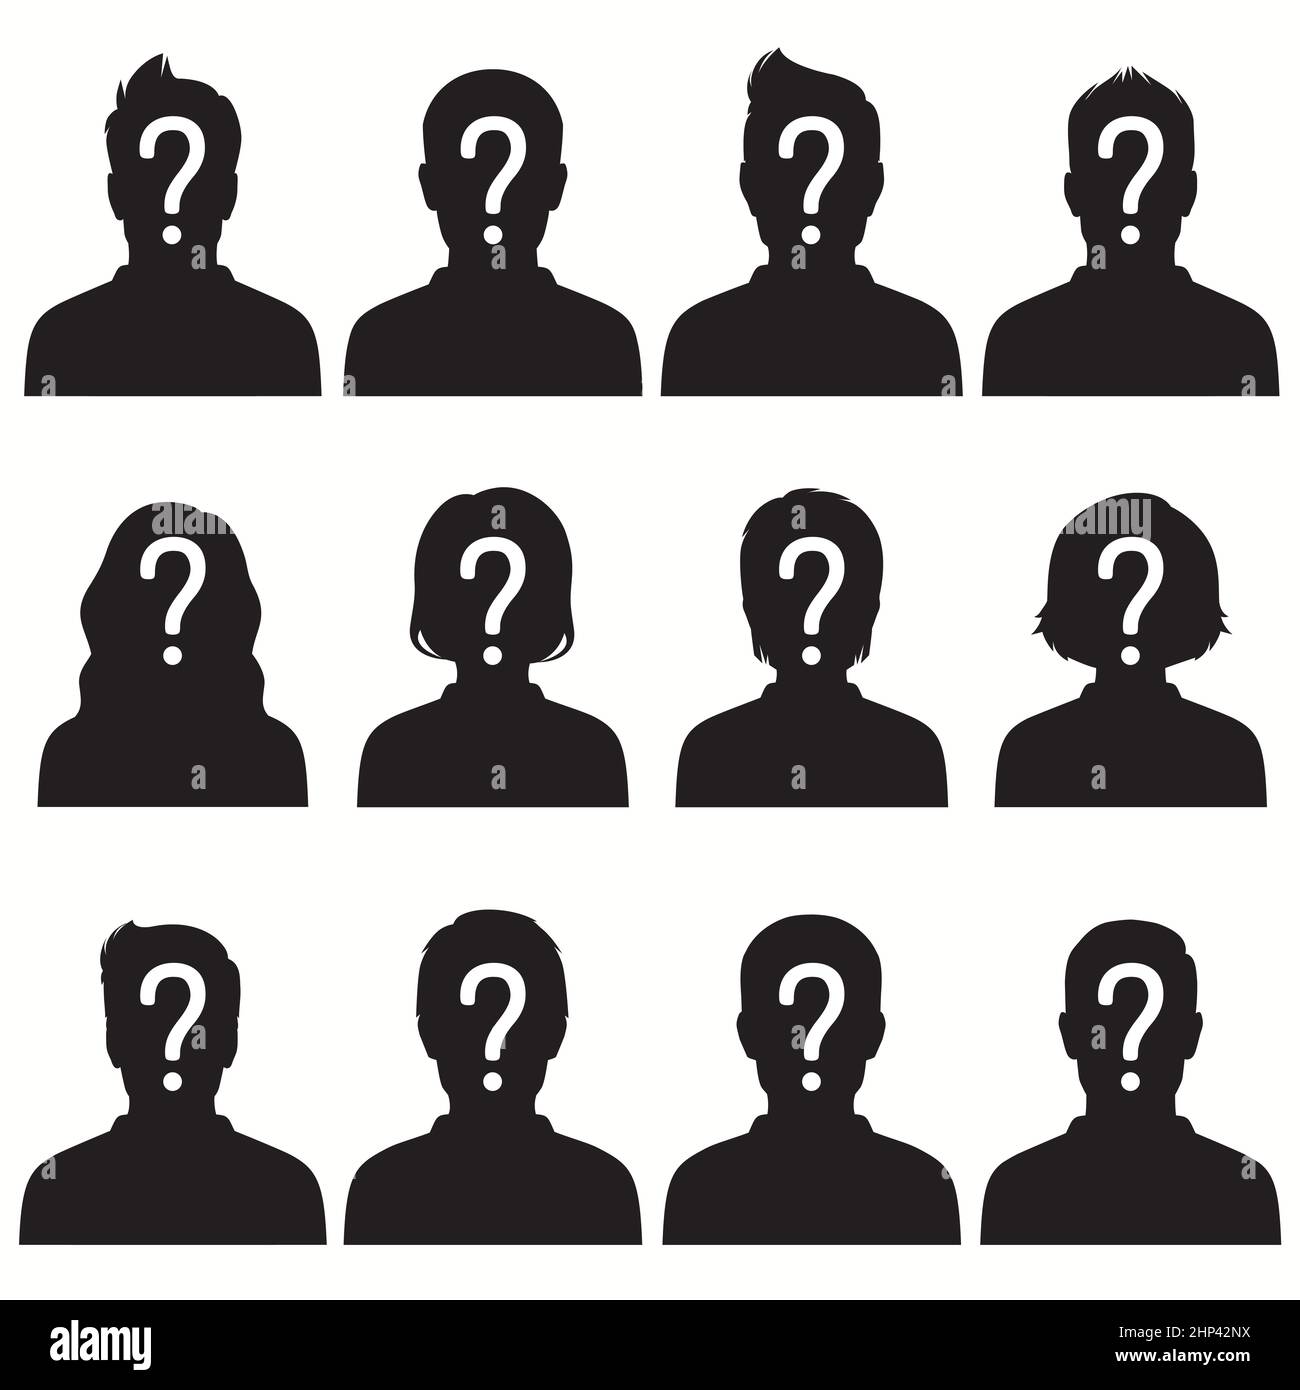 illustration vectorielle d'une personne manquante, graphique recherché affiche, homme anonyme perdu Banque D'Images